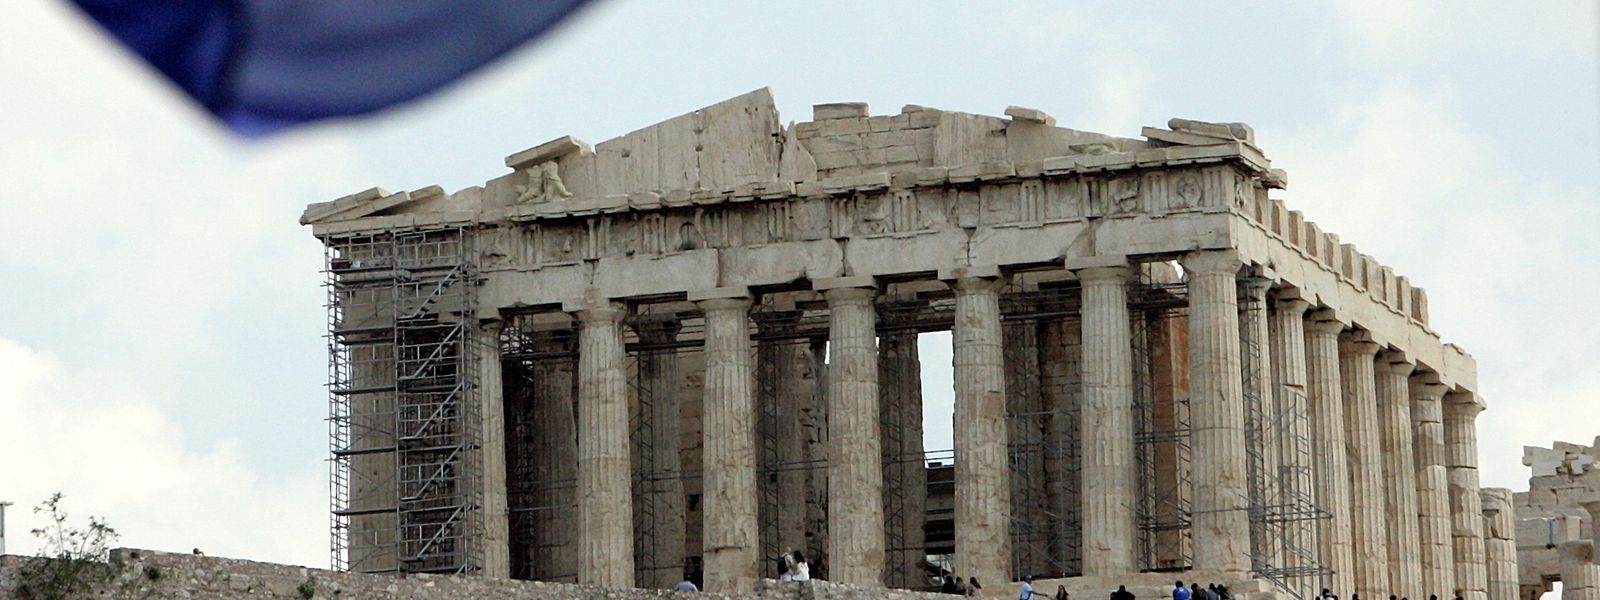 Griechenland war in der Eurokrise der größte Abnehmer der Hilfskredite. 